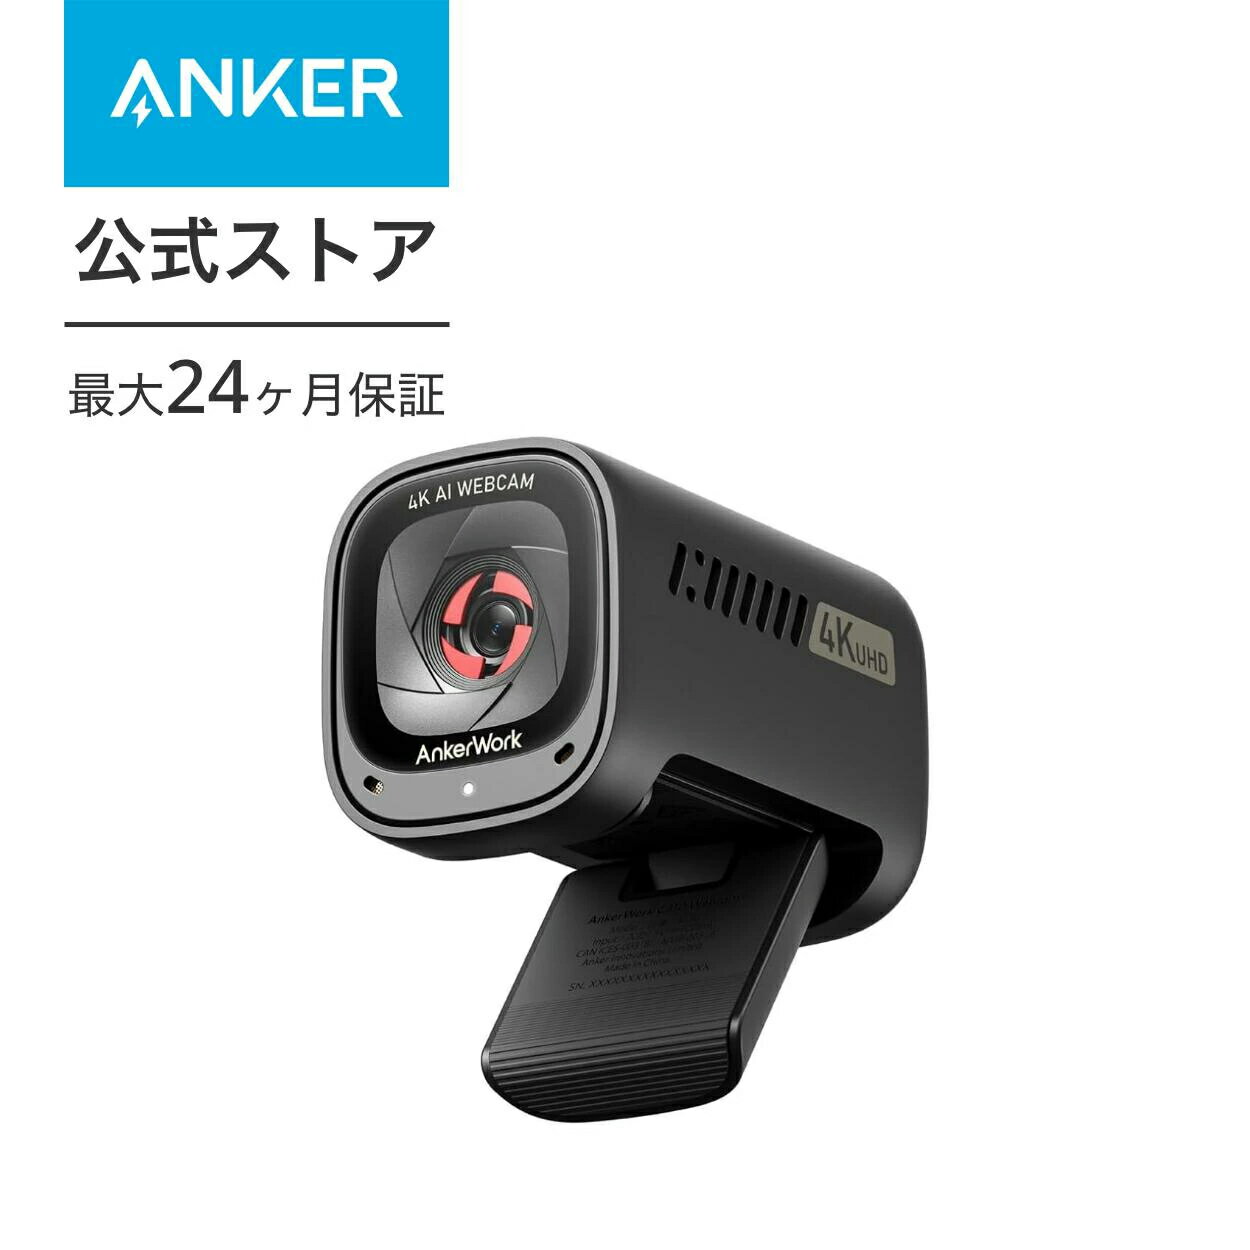 Anker AnkerWork C310 ウェブカメラ【4K UHD